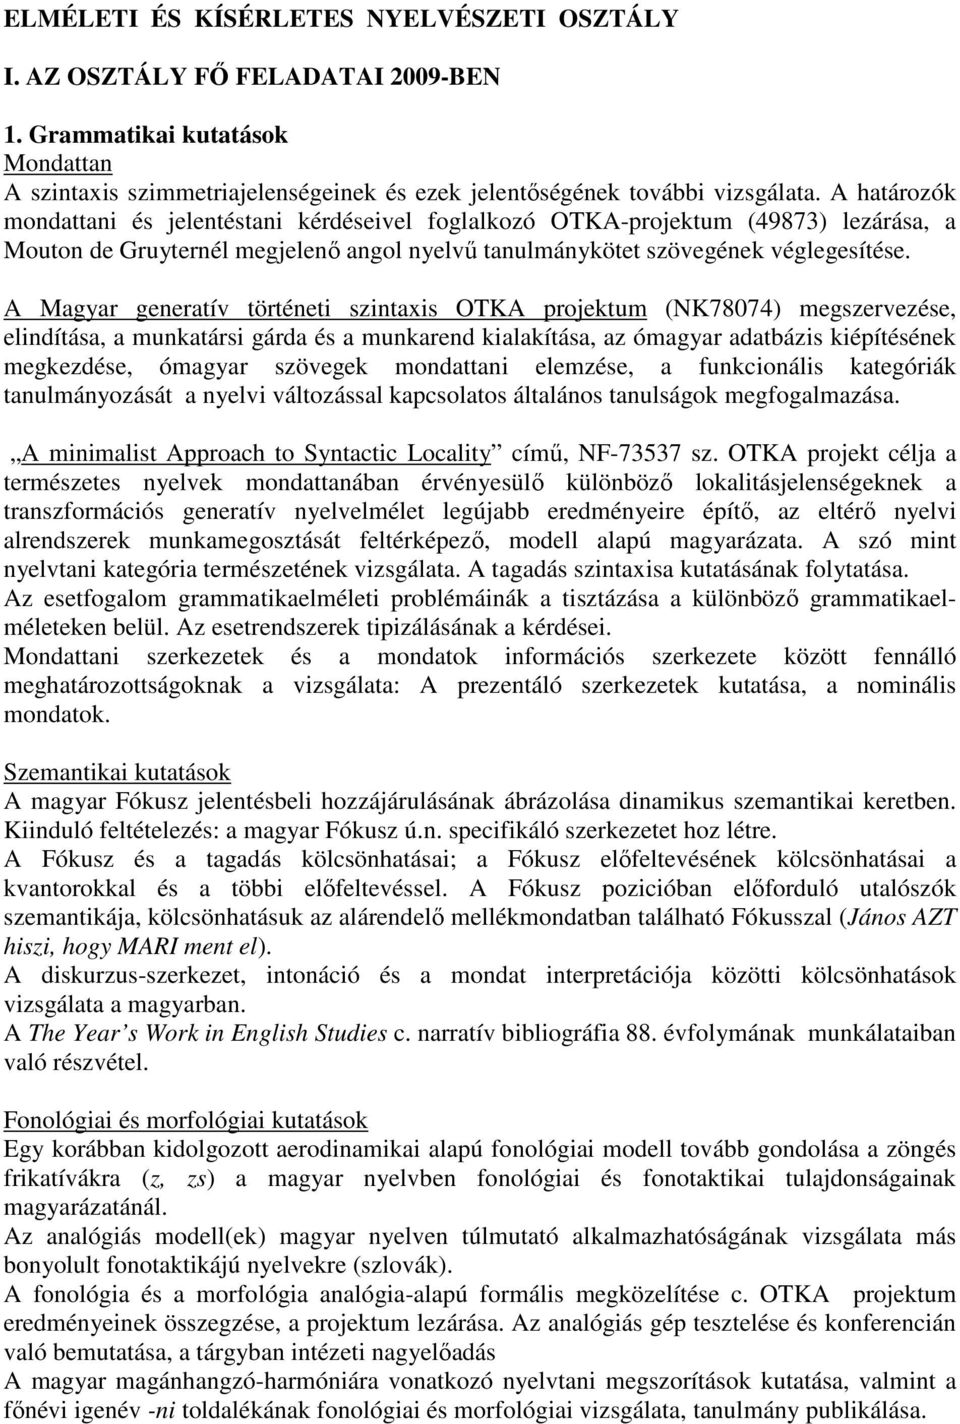 A Magyar generatív történeti szintaxis OTKA projektum (NK78074) megszervezése, elindítása, a munkatársi gárda és a munkarend kialakítása, az ómagyar adatbázis kiépítésének megkezdése, ómagyar